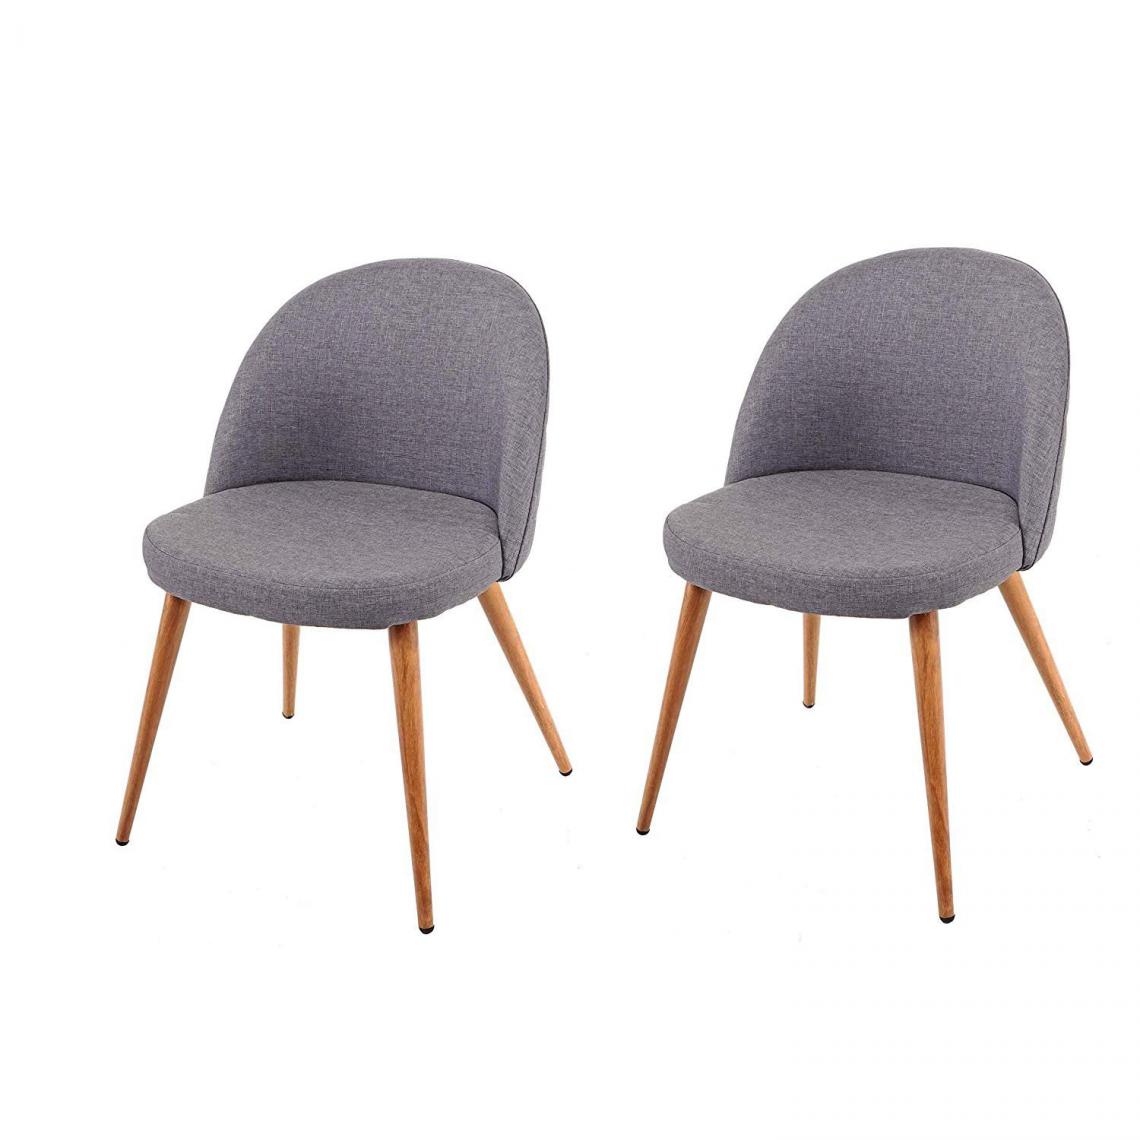 Decoshop26 - Lot de 2 chaises de salle à manger gris foncé pieds en bois style rétro CDS04415 - Chaises